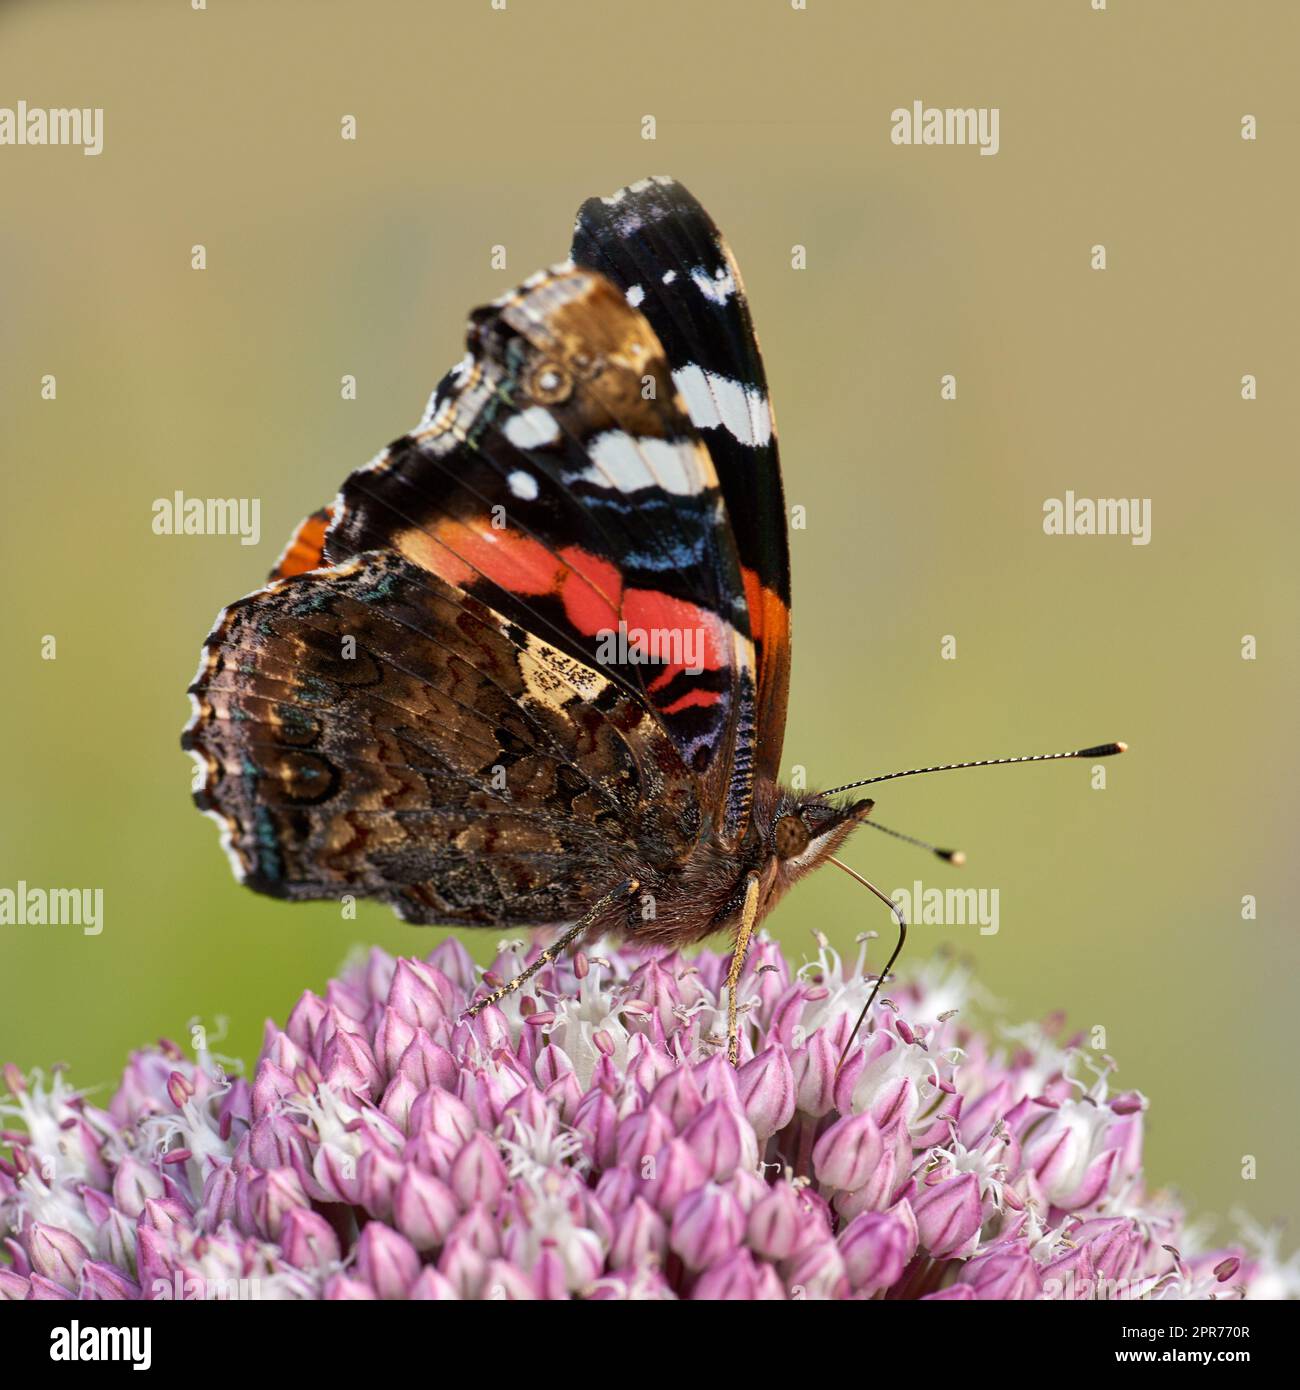 Wunderschöner roter Admiral oder vanessa atalanta Schmetterling in einem sonnigen Garten mit Kopierraum. Nahaufnahme eines fliegenden Insekts mit bunten Flügeln, die sich von süßem Nektar ernähren, um draußen eine rosa Blume zu bestäuben Stockfoto